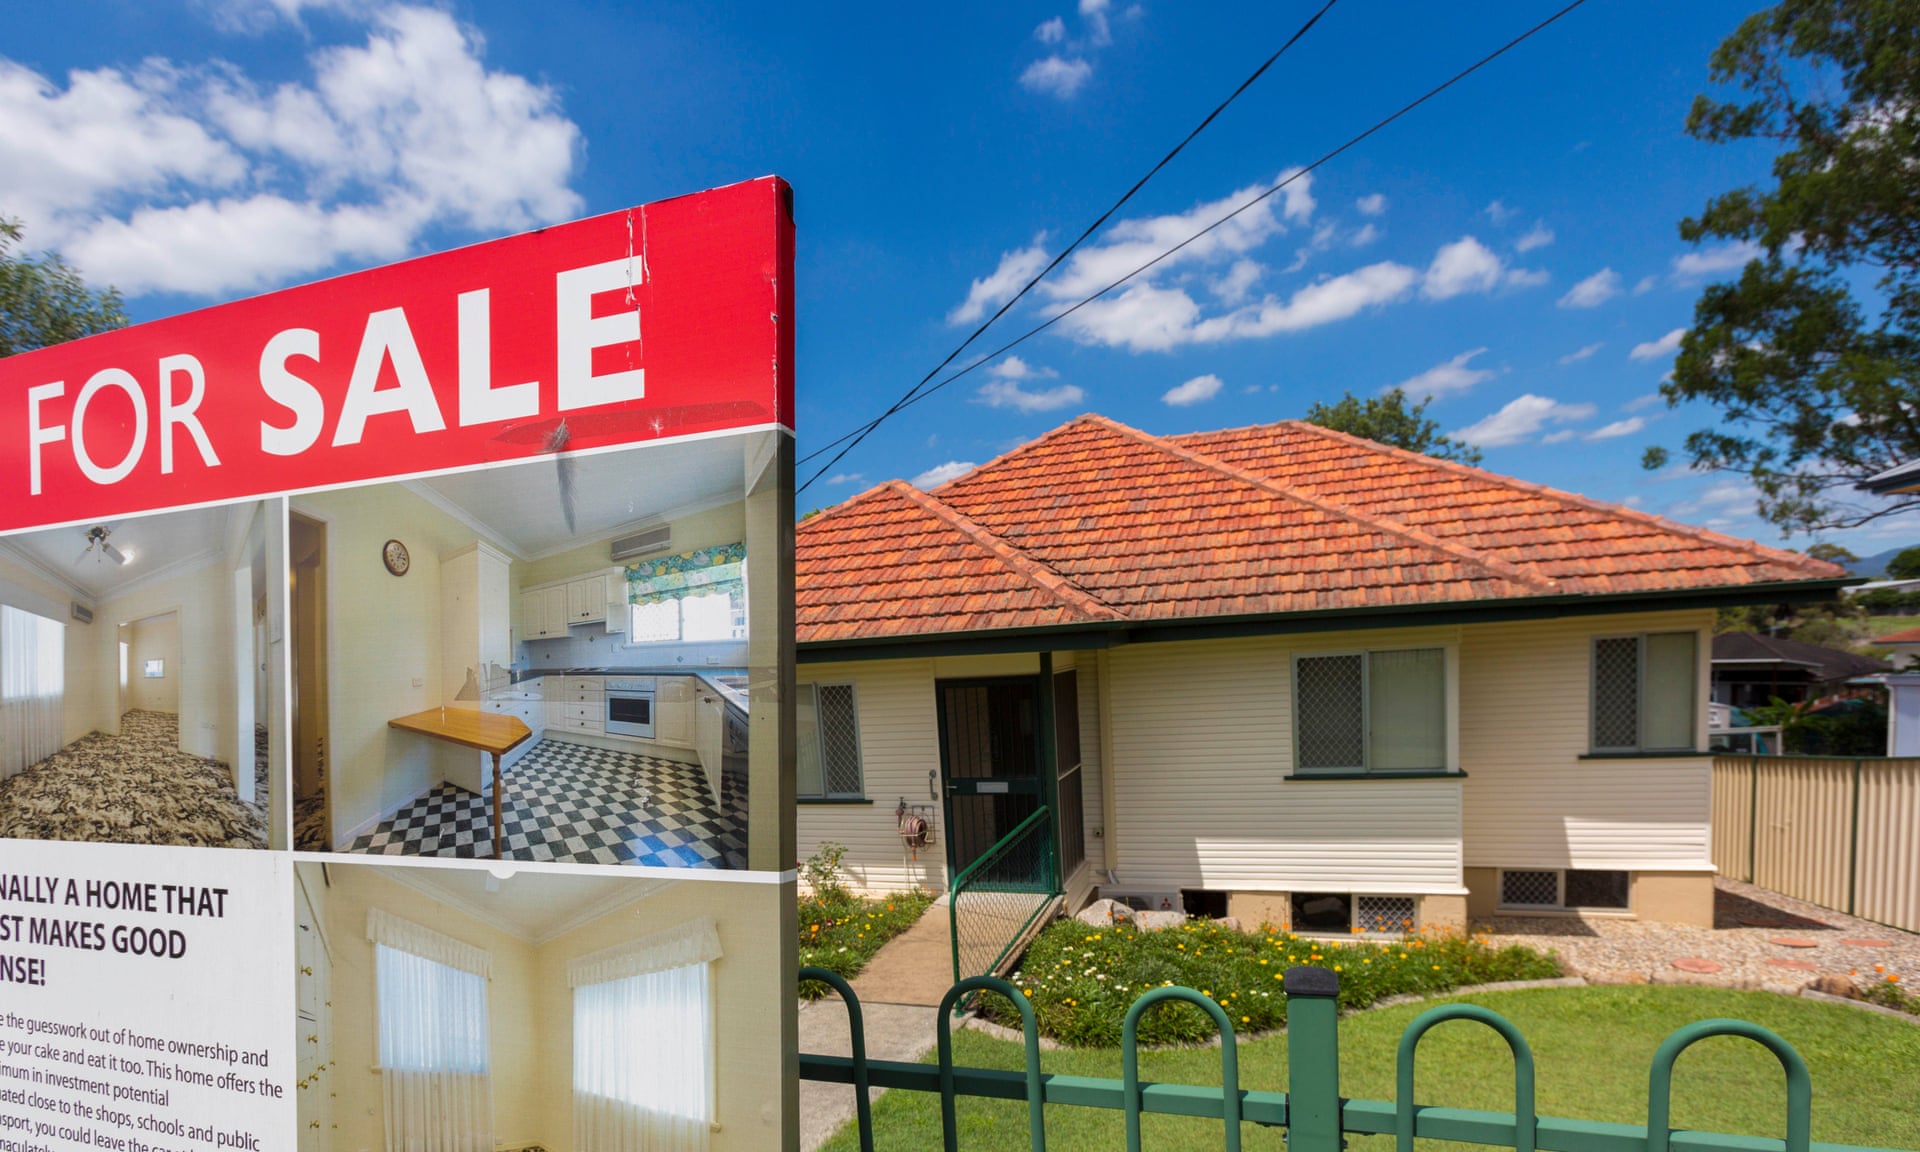 Chỉ cần có số tiền tối thiểu 5% giá trị căn hộ, bạn đã có cơ hội mua nhà ở Úc năm nay (Ảnh: Glenn Hunt/AAP)